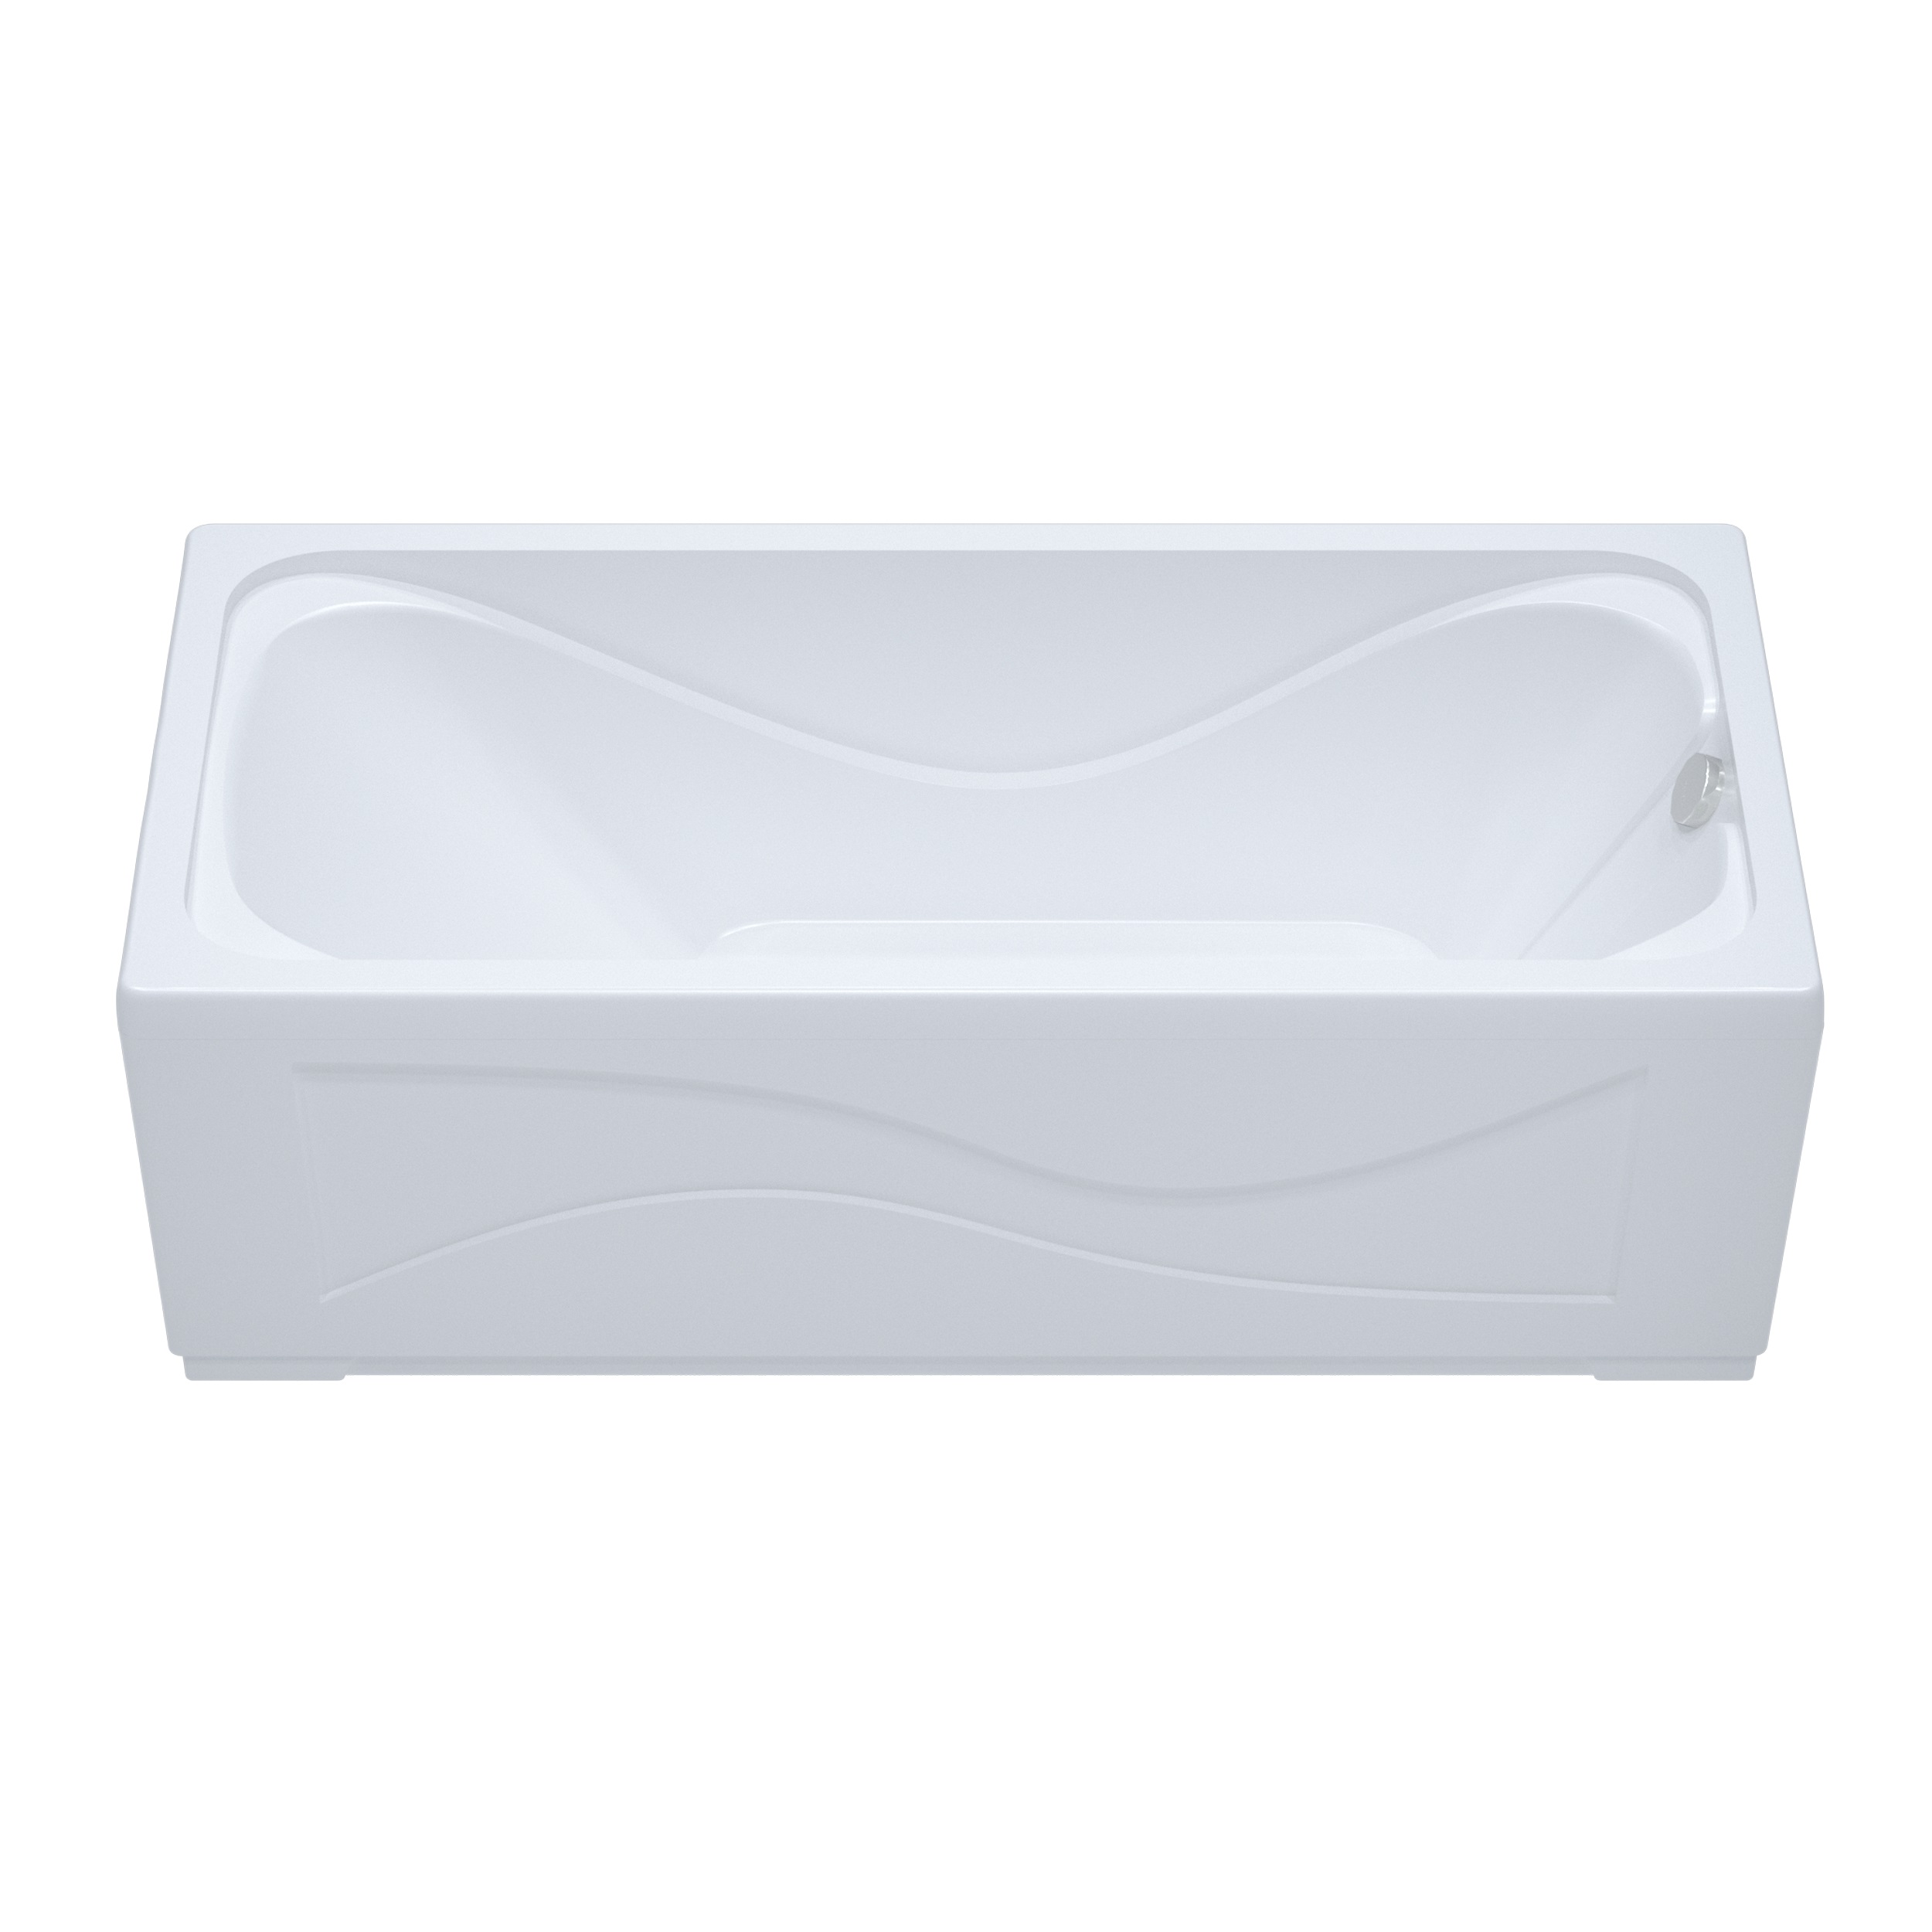 Акриловая ванна Тритон Стандарт 140x70, размер 140x70, цвет белый Н0000099327 - фото 2